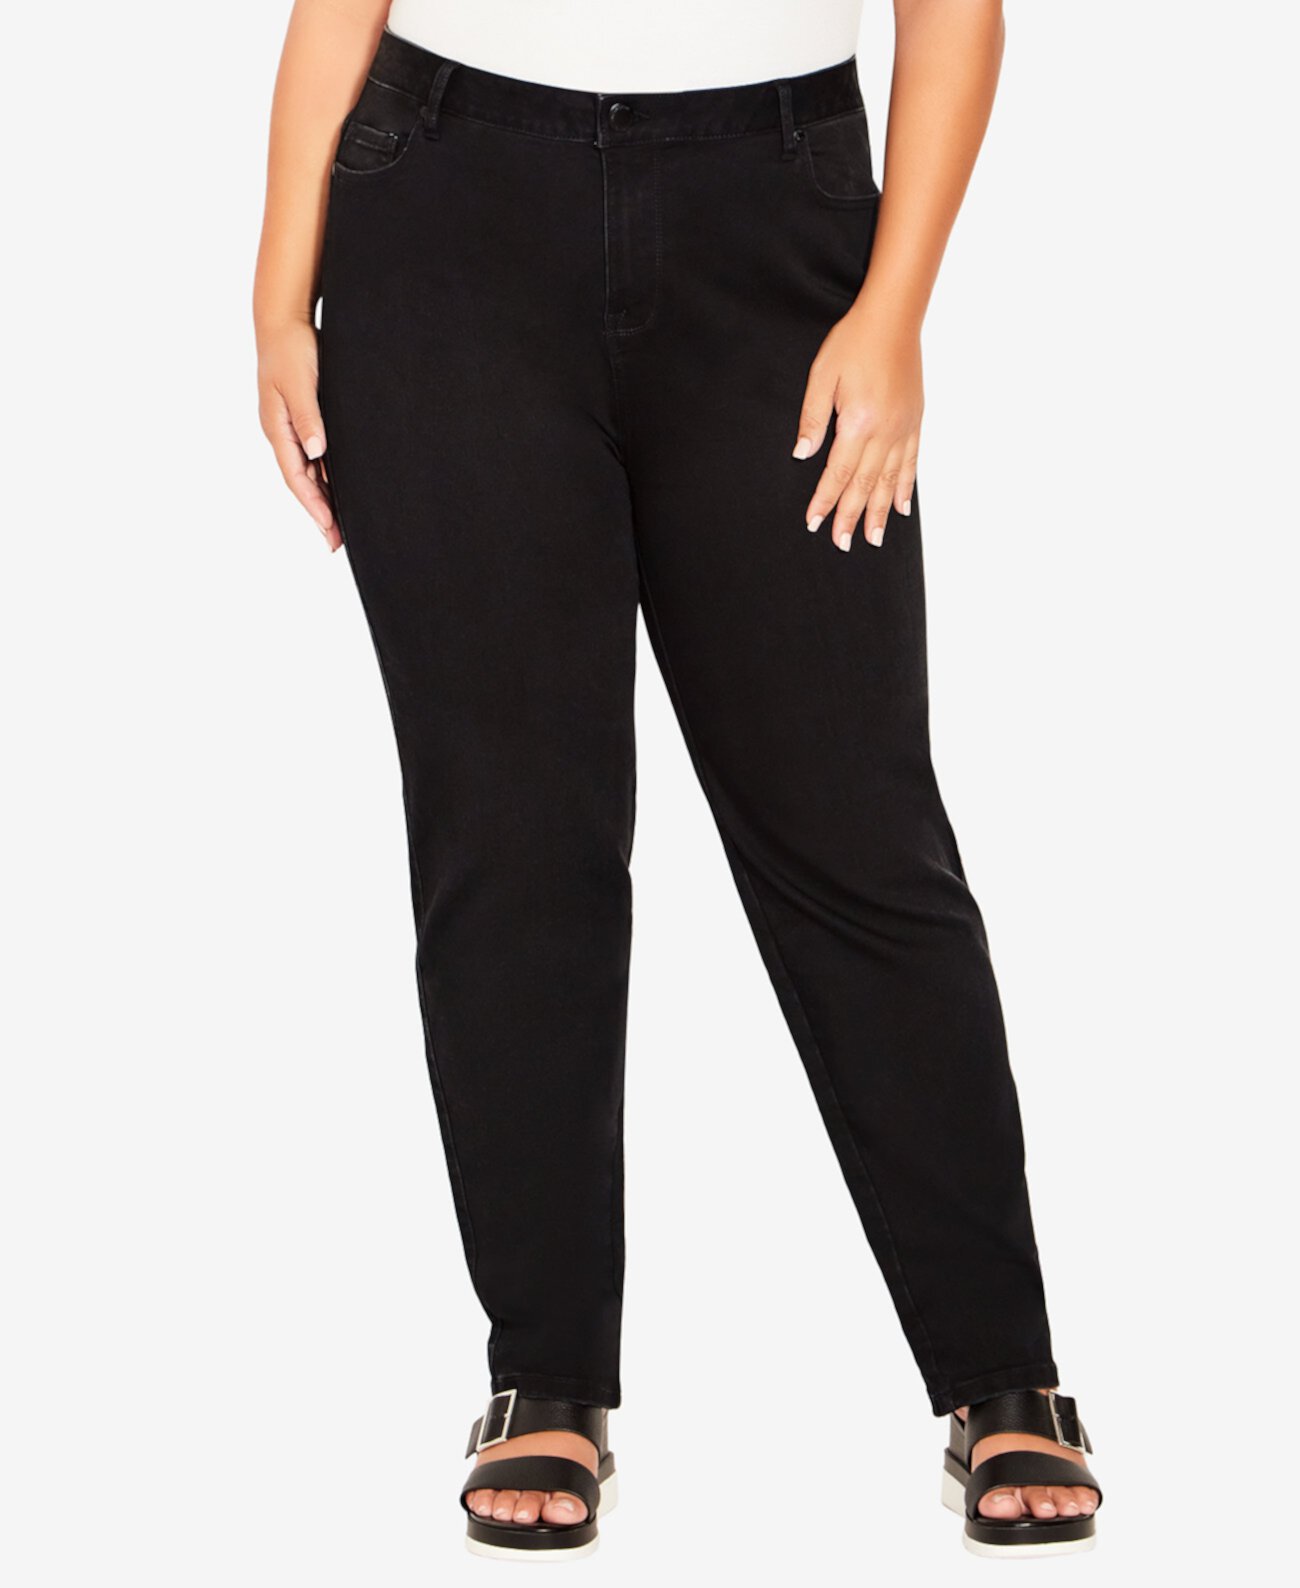 Джинсы больших размеров, прямые джинсы стандартной длины, прямые брюки AVENUE